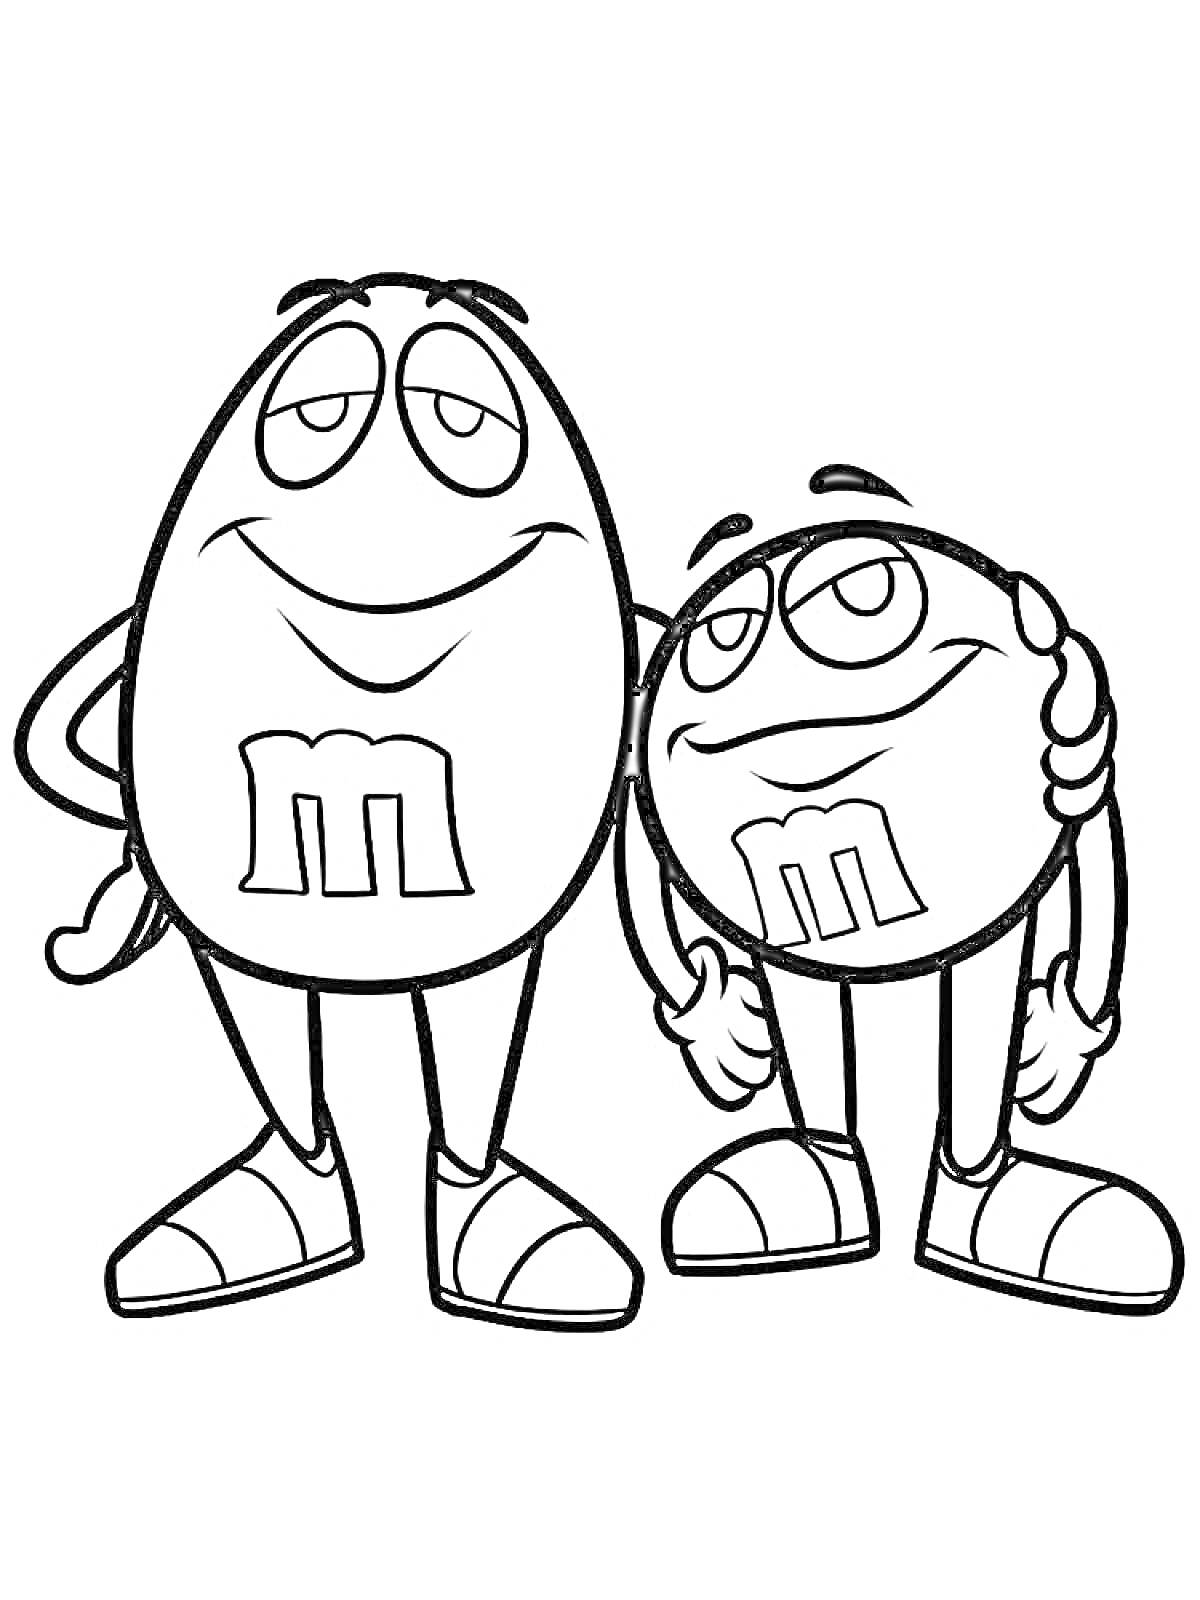 Раскраска Два M&M's персонажа, обнимающиеся и улыбающиеся